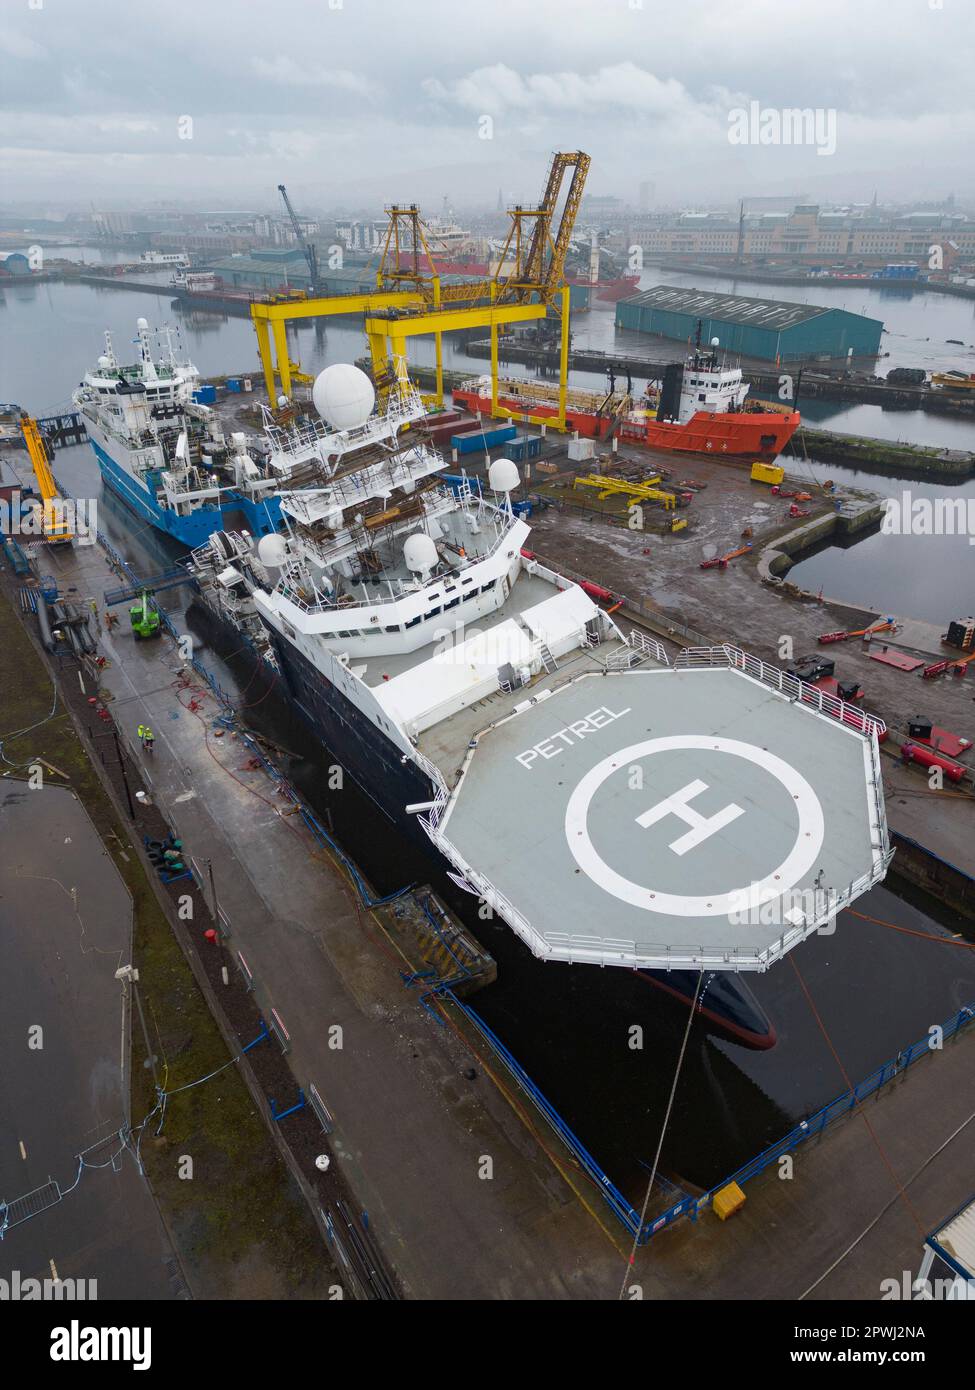 Edimburgo, Scozia, Regno Unito. 30 aprile 2023. La nave di ricerca RV Petrel è stata rifatta galleggiare oggi in bacino di carenaggio ed è ora in uno stato molto più retto. Foto Stock